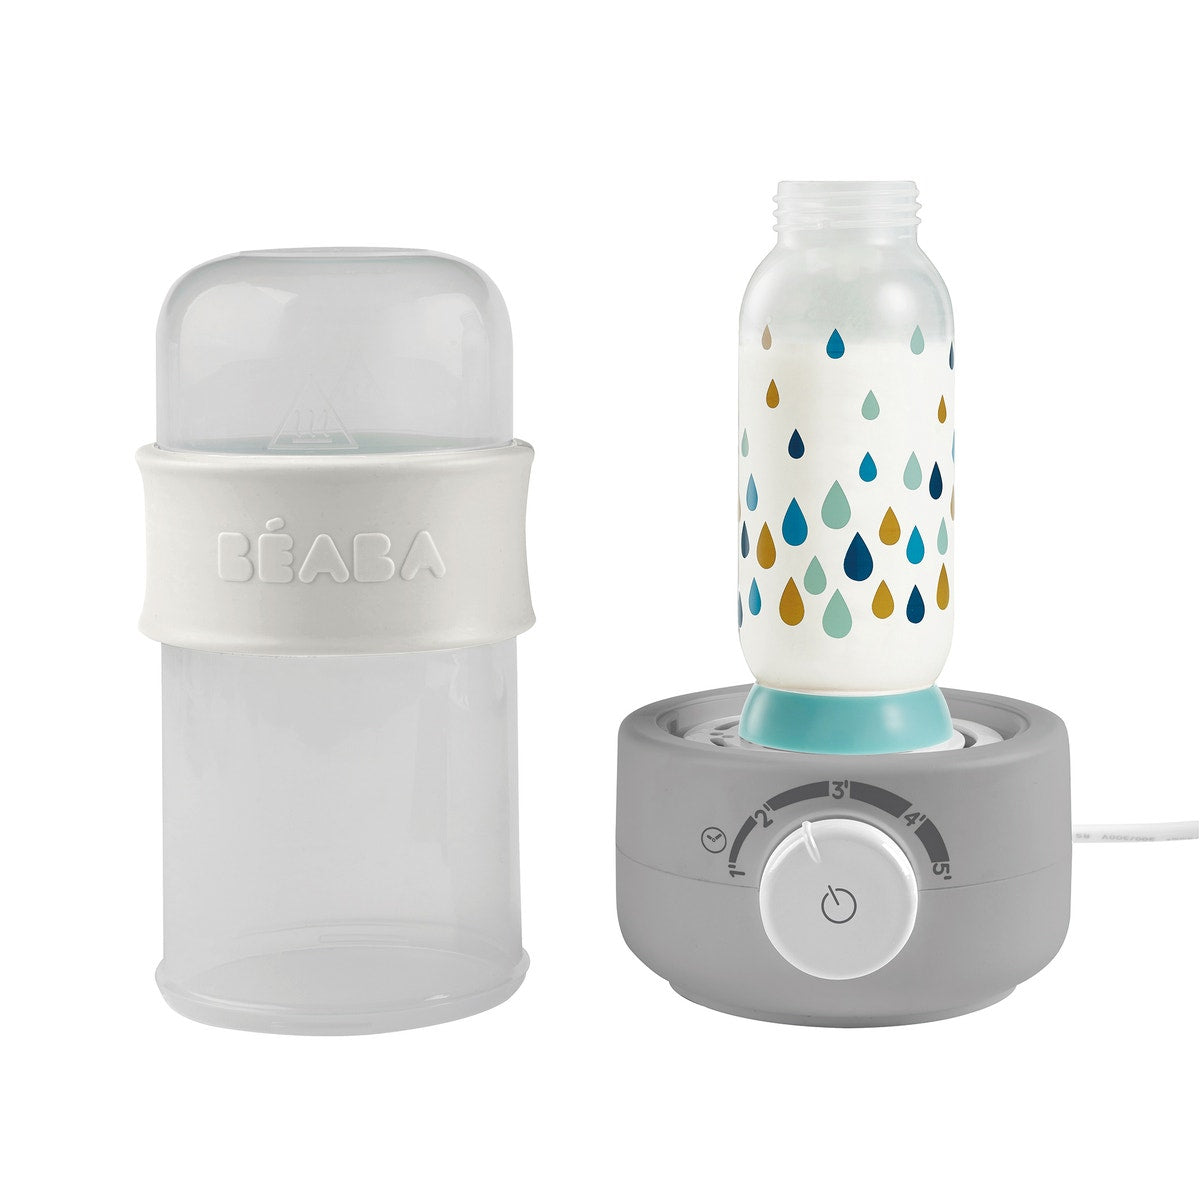 BEABA Babymilk 3-IN-1 Bottle Warmer Cloud